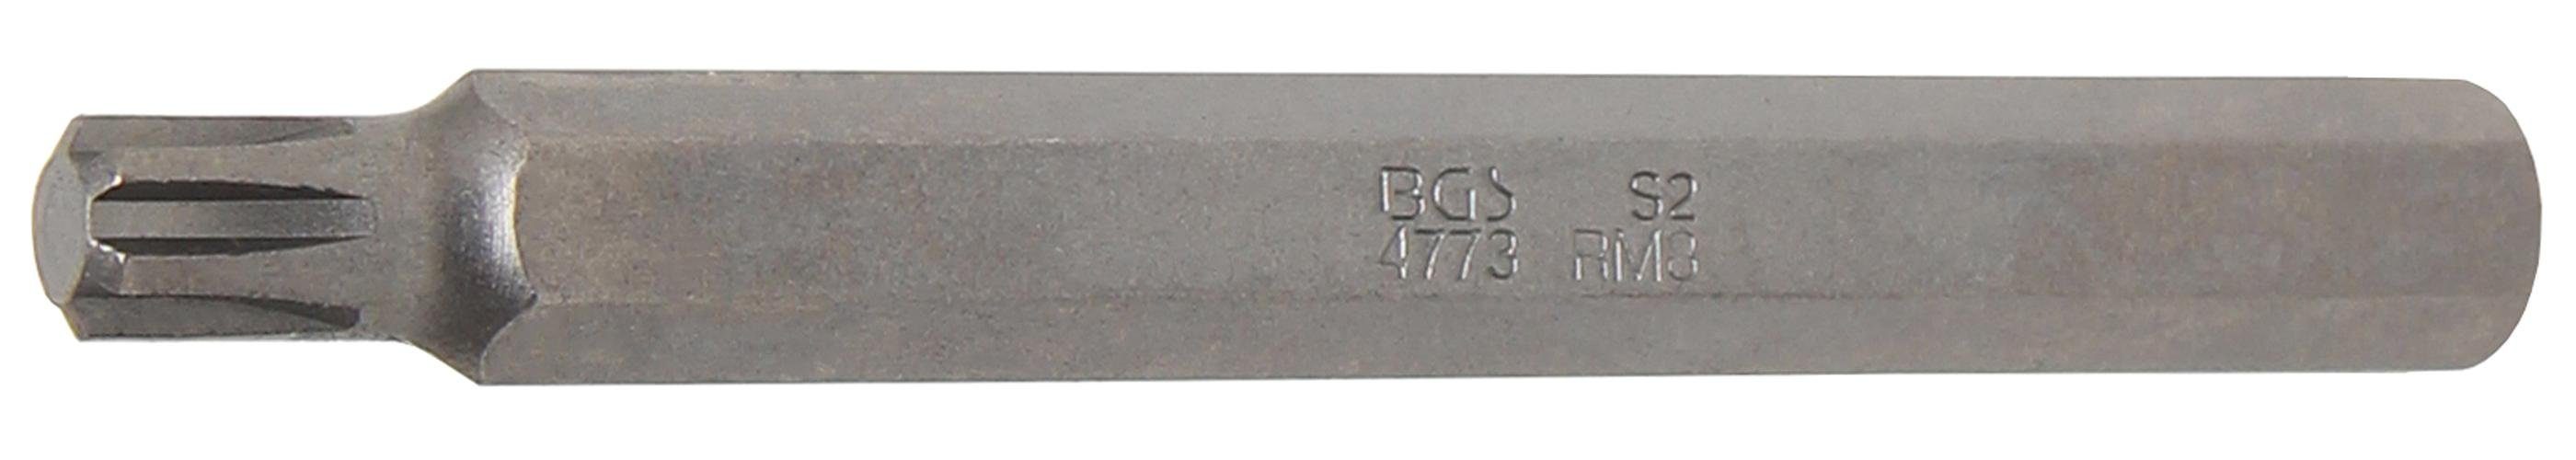 BGS technic Bit-Schraubendreher Bit, Länge 100 mm, Antrieb Außensechskant 10 mm (3/8), Keil-Profil (für RIBE) M8